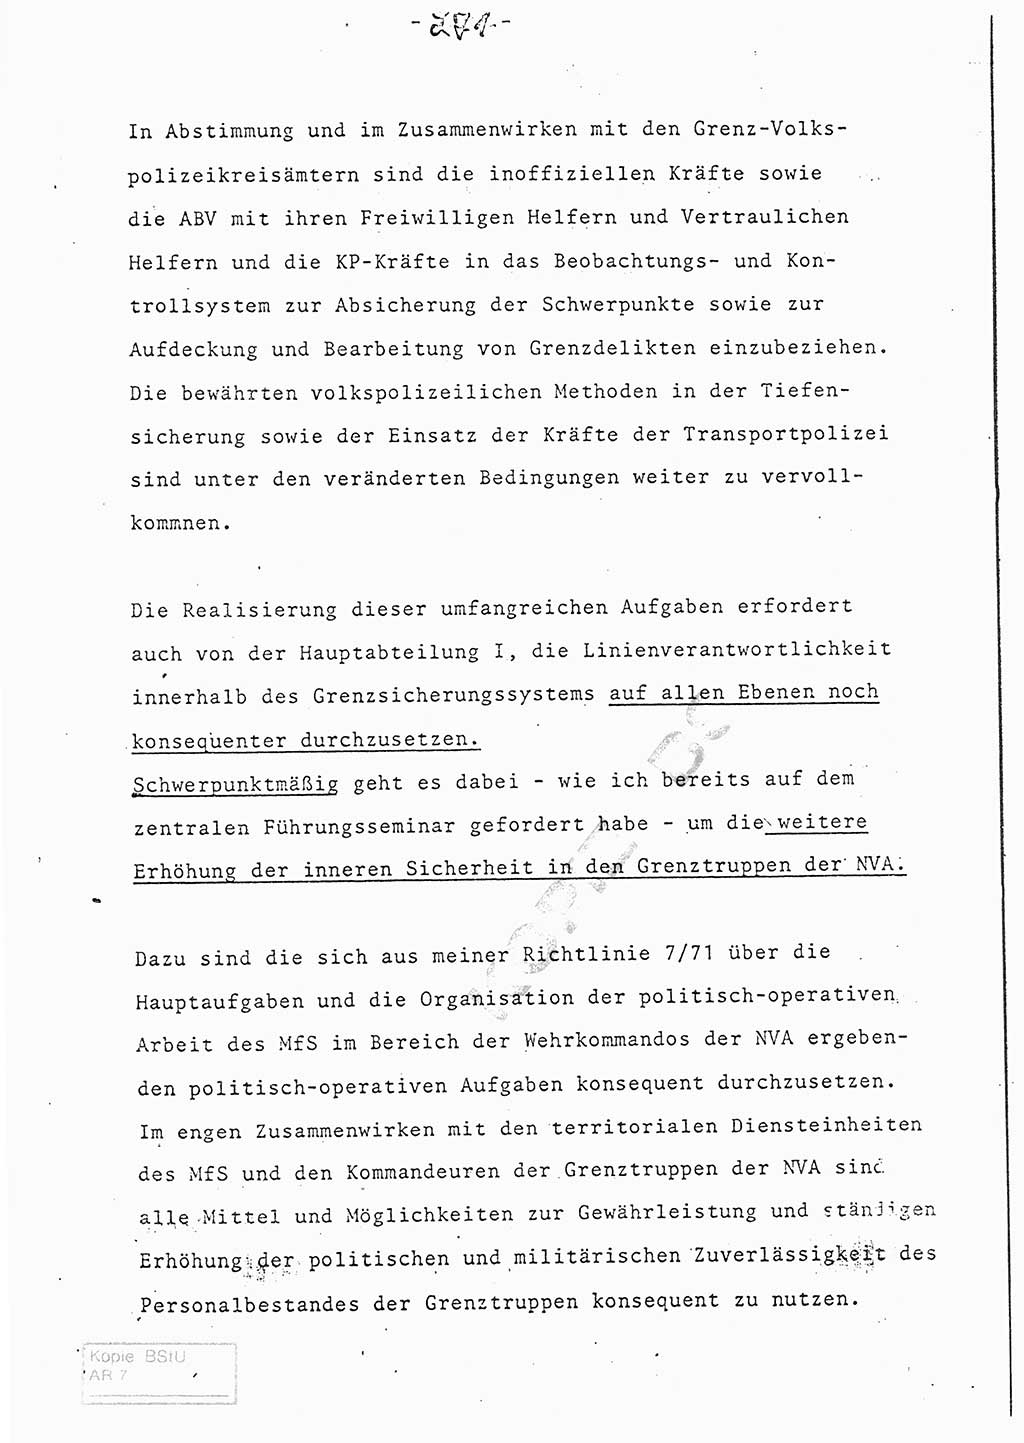 Referat (Entwurf) des Genossen Minister (Generaloberst Erich Mielke) auf der Dienstkonferenz 1972, Ministerium für Staatssicherheit (MfS) [Deutsche Demokratische Republik (DDR)], Der Minister, Geheime Verschlußsache (GVS) 008-150/72, Berlin 25.2.1972, Seite 271 (Ref. Entw. DK MfS DDR Min. GVS 008-150/72 1972, S. 271)